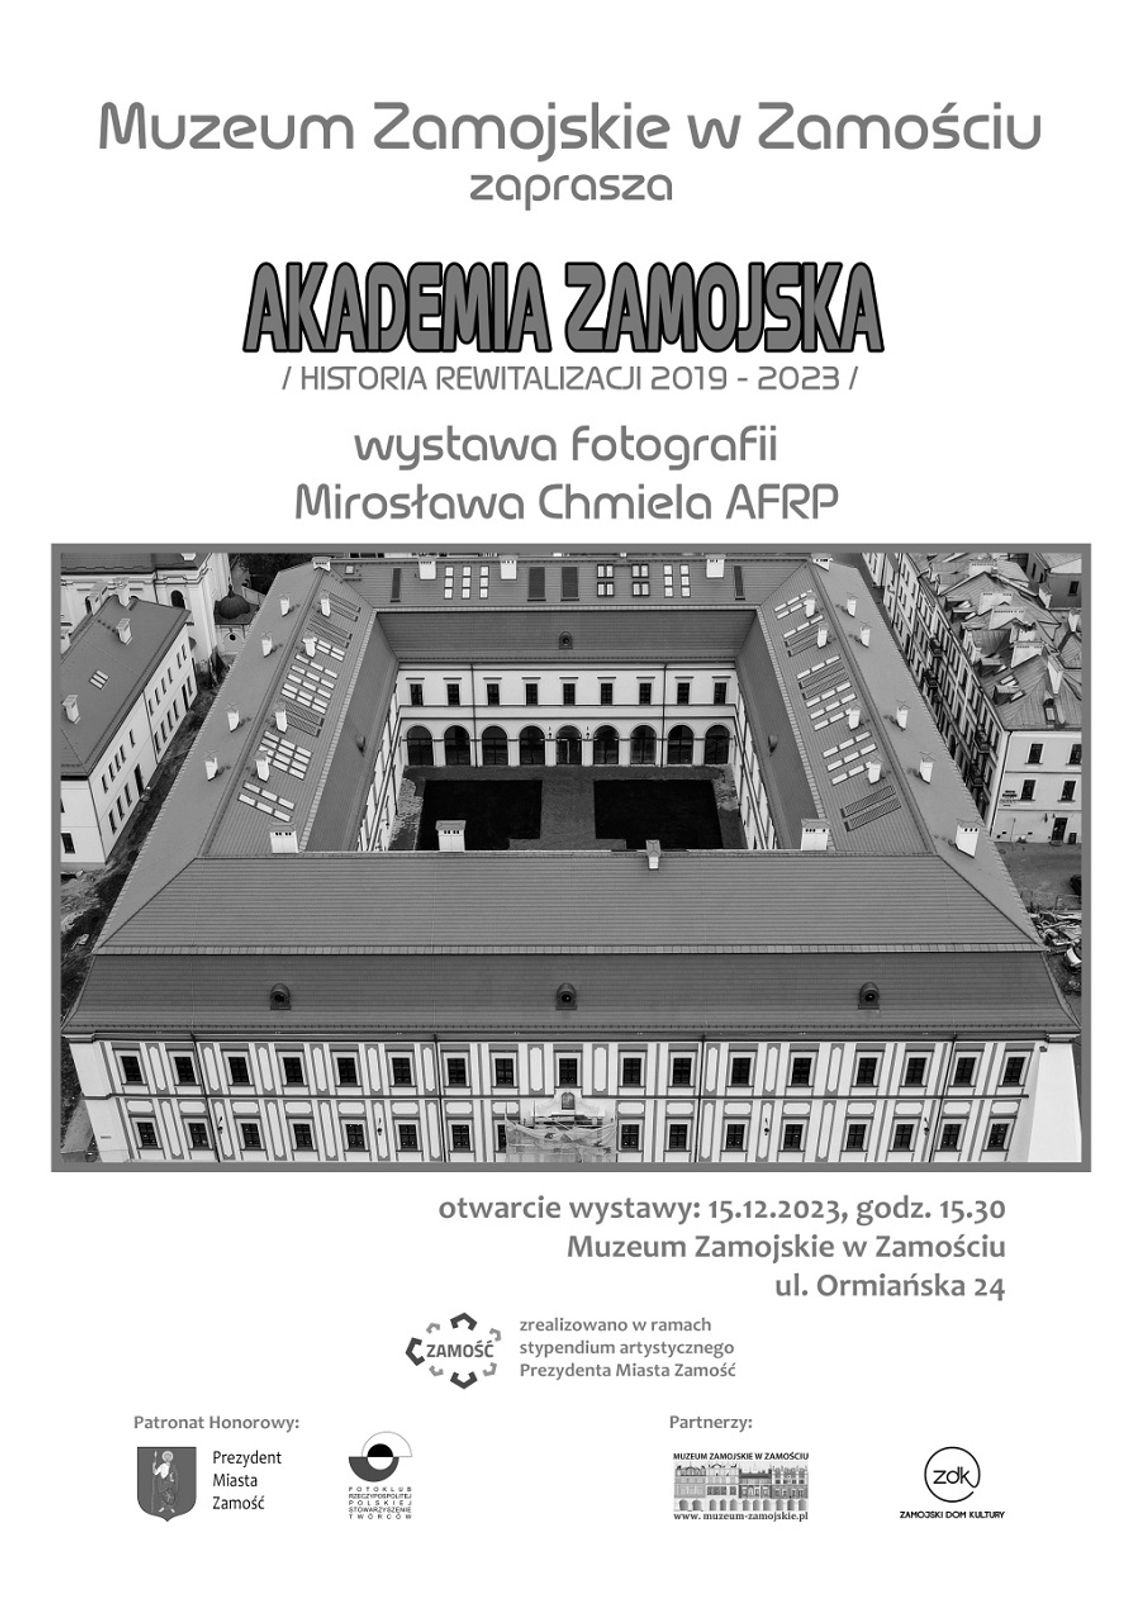 Zamość: Historia rewitalizacji Akademii Zamojskiej na fotografiach Mirosława Chmiela